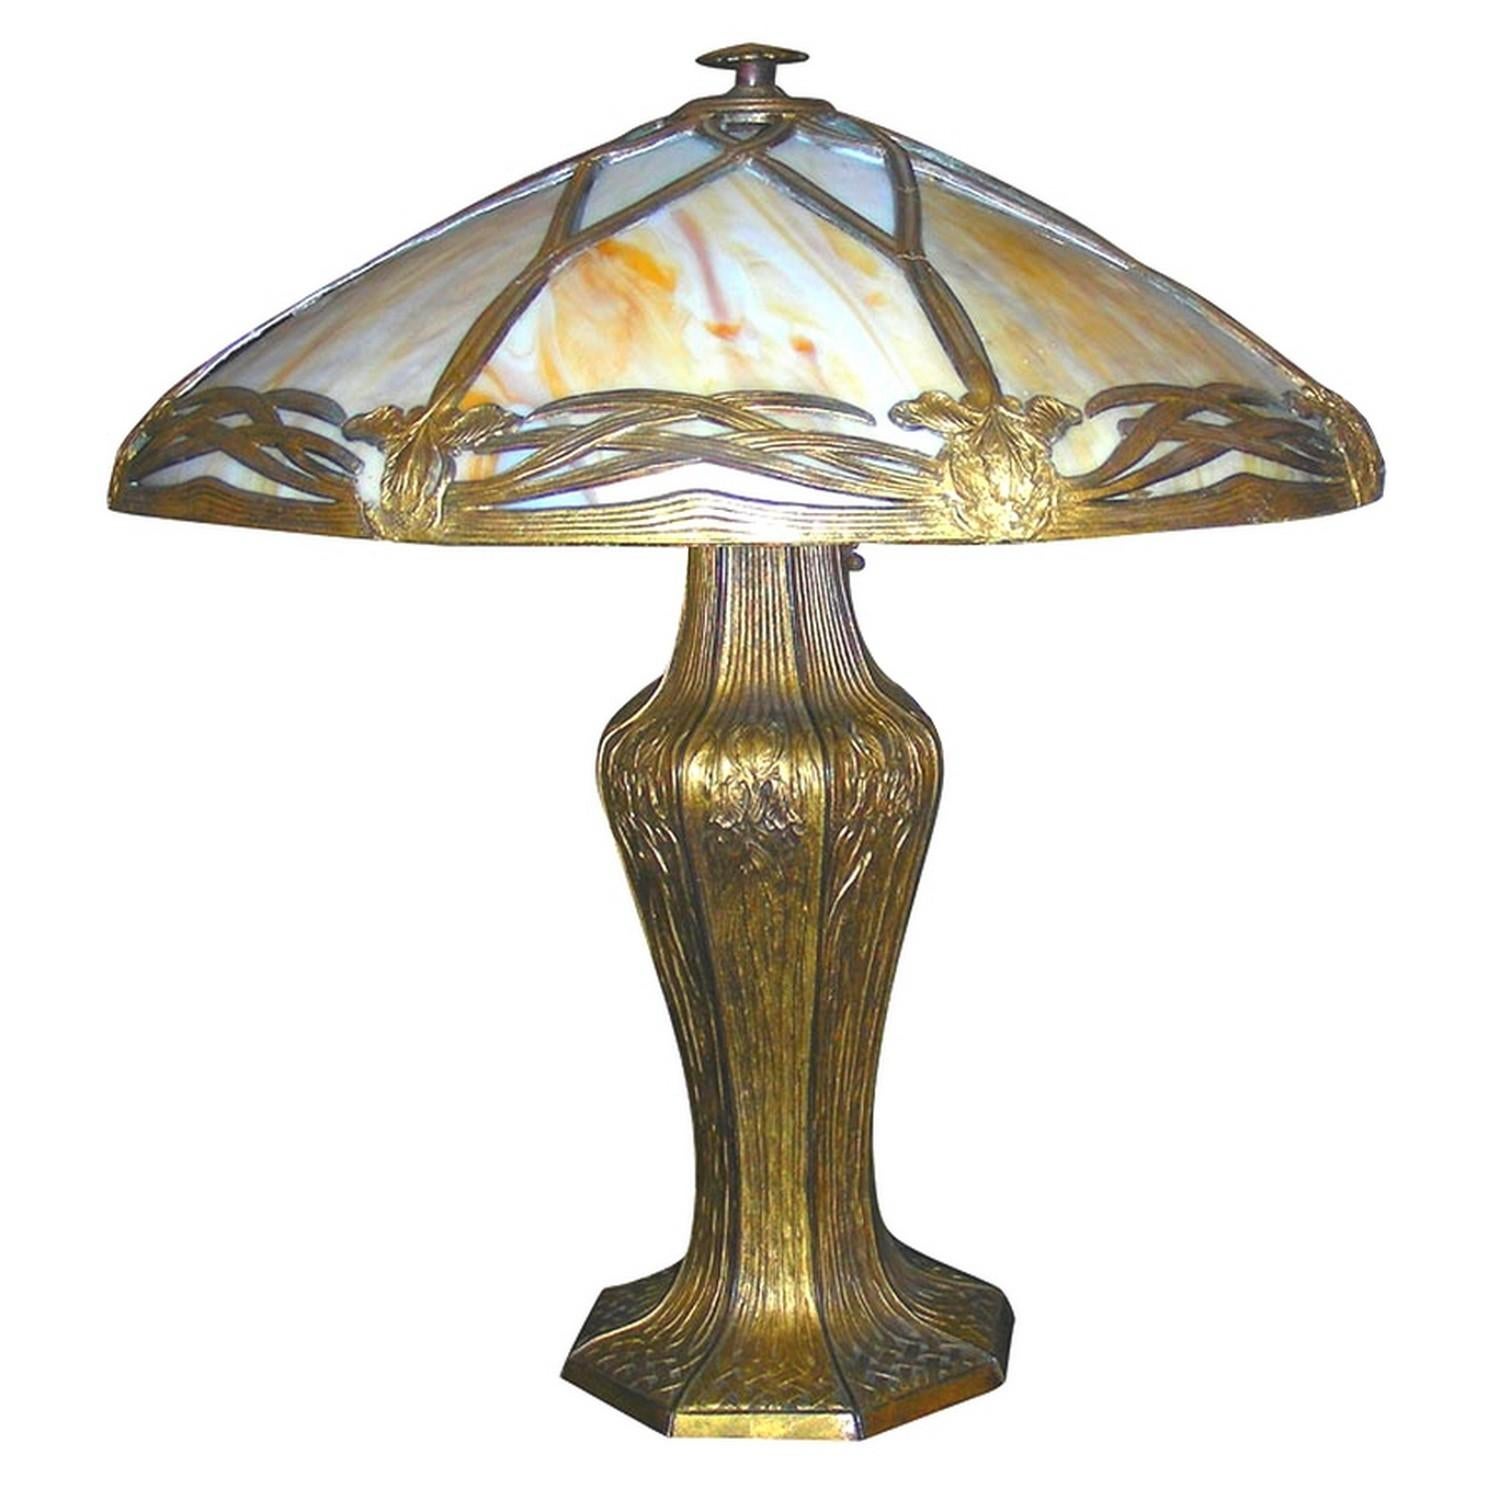 Bradley & Hubbard Arts & Crafts Tischlampe.

Lampenschirm mit gefälztem Metallrahmen mit Irisdekor und gebogenen Schlackenglasscheiben.
Unter dem Sockel der Lampe sind Bradley und Hubbard eingestanzt.
Schöne Farben, wenn es ein- und